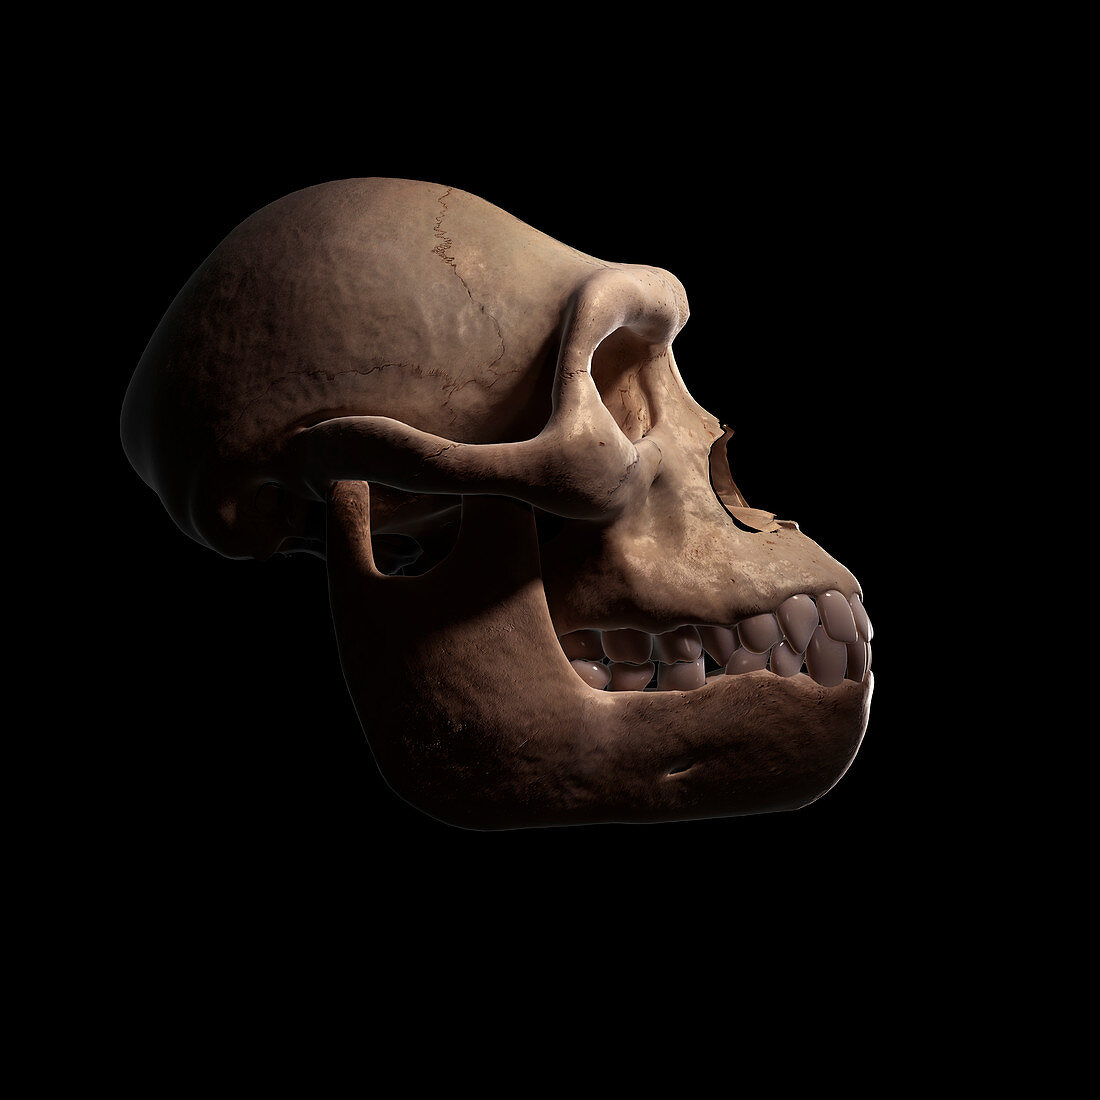 Australopithecus Skull, illustration